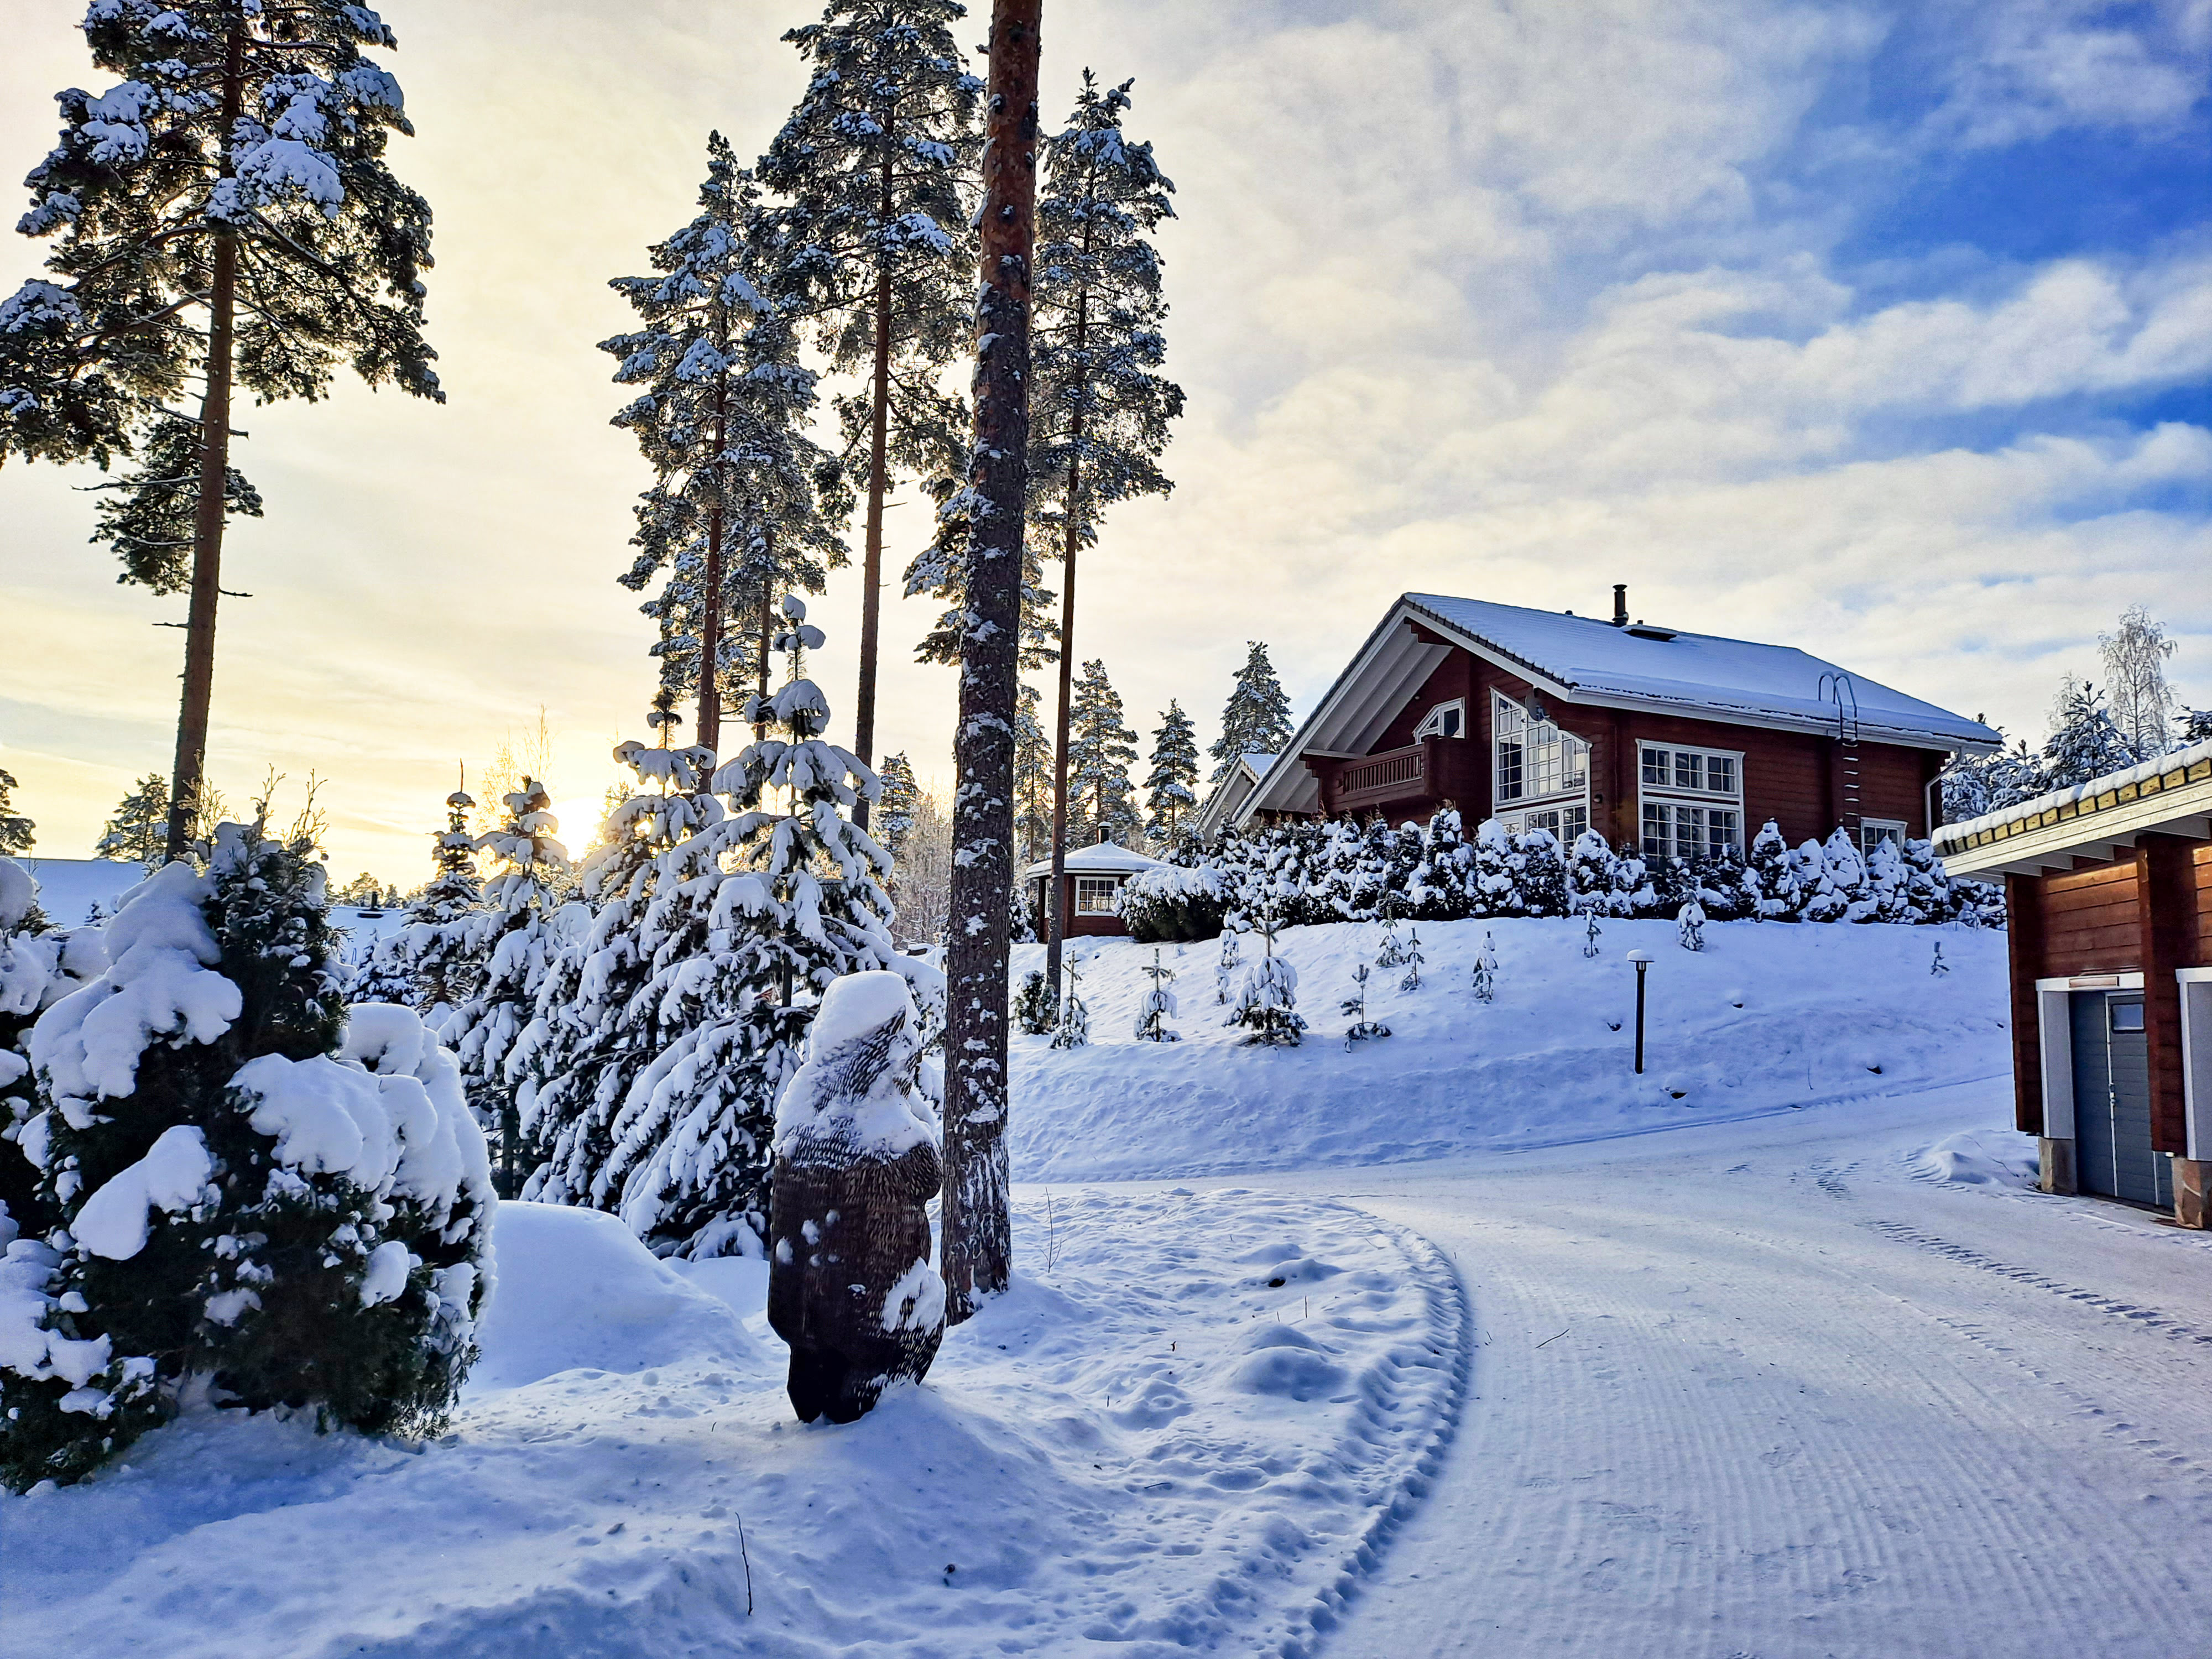 Новый год в Финляндии станет самым волшебным и увлекательным зимним приключением. Именно здесь находится знаменитая деревня Санта-Клауса, где можно окунуться в сказочную атмосферу, испечь рождественское печенье, попробовать традиционные финские блюда и получить подарки от самого Санты. Зима в Финляндии – это сезон горнолыжных курортов и зимних видов спорта. В новогодние праздники вы сможете покататься по заснеженным склонам на горных и беговых лыжах, сноуборде, санках и ватрушках. А еще вас ждут яркие впечатления от участия в сафари с собачьей упряжкой и поездки на мотосанях. После активного отдыха будет приятно провести уютный вечер всей семьей у камина или погреться в сауне, которая расположена в каждом из наших коттеджей в Saimaa Lakeside и Tahko hills.